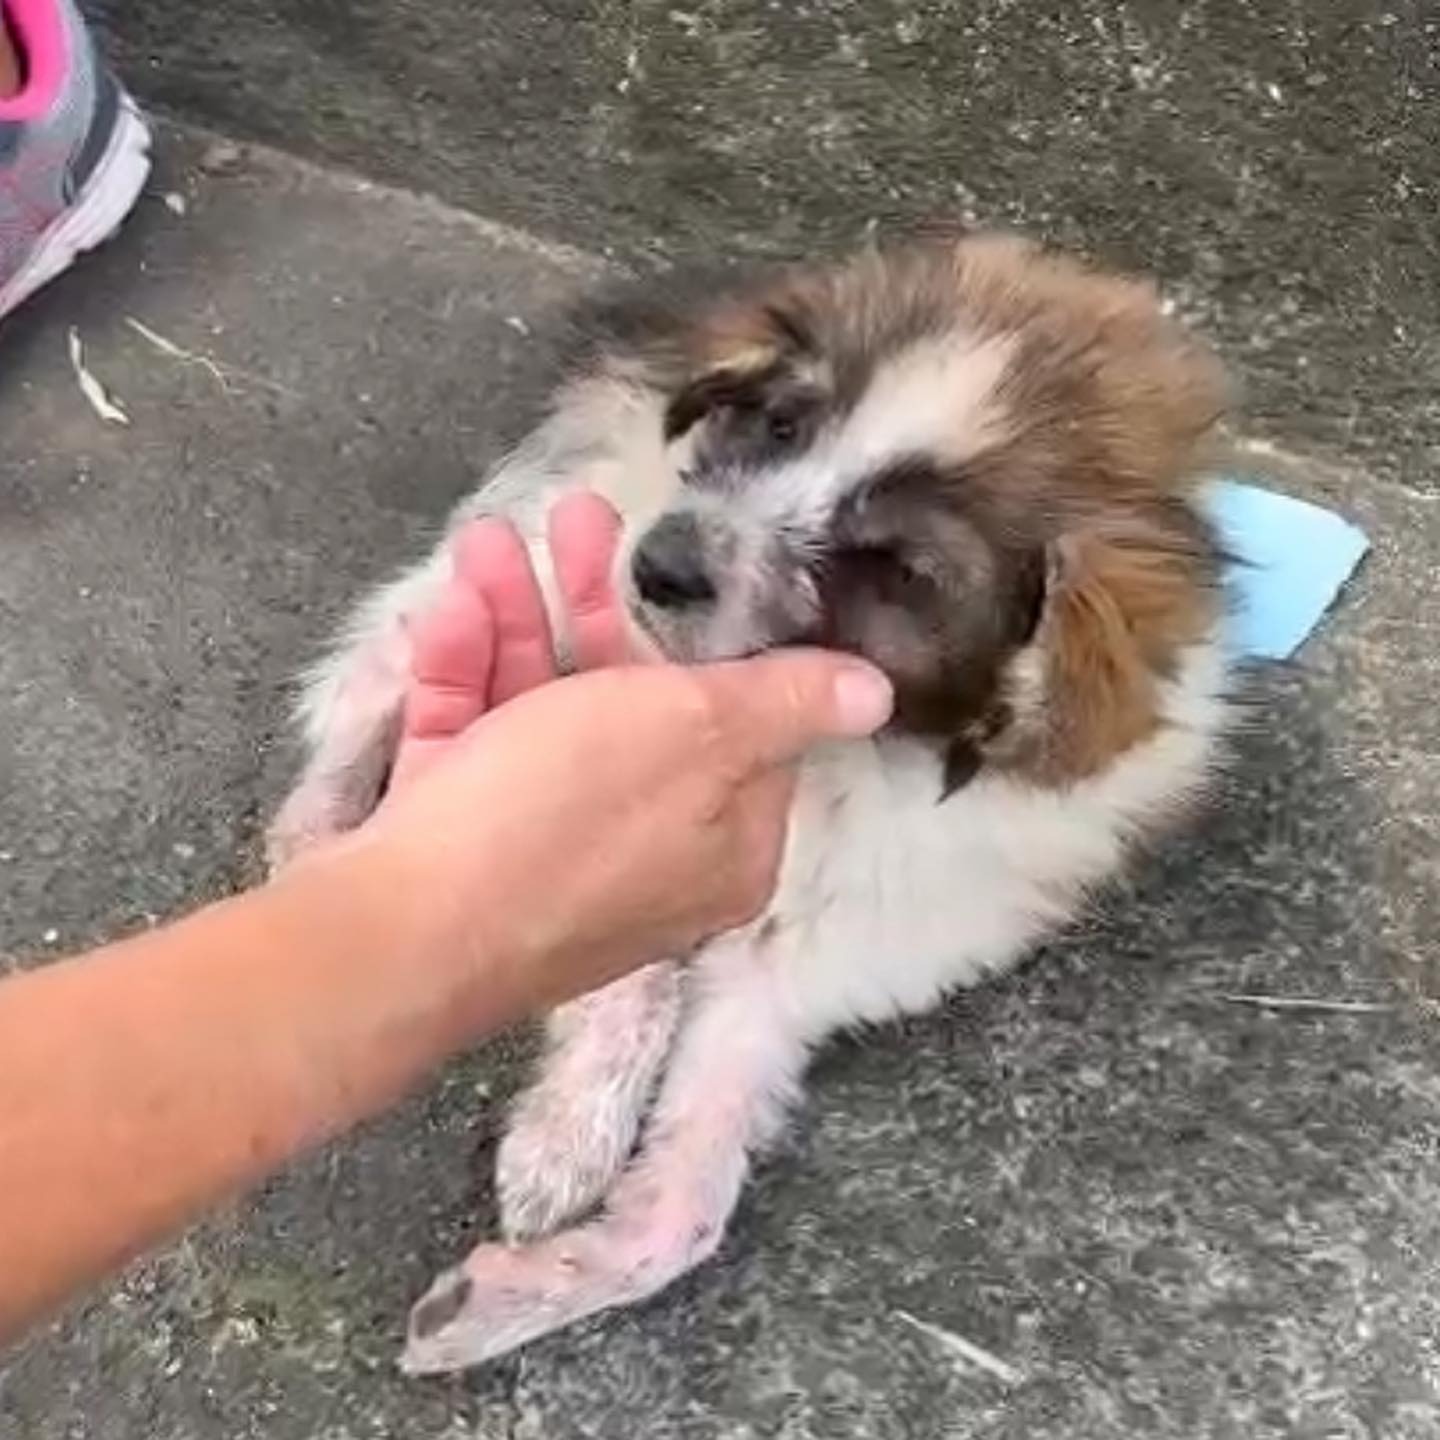 injured puppy found by human